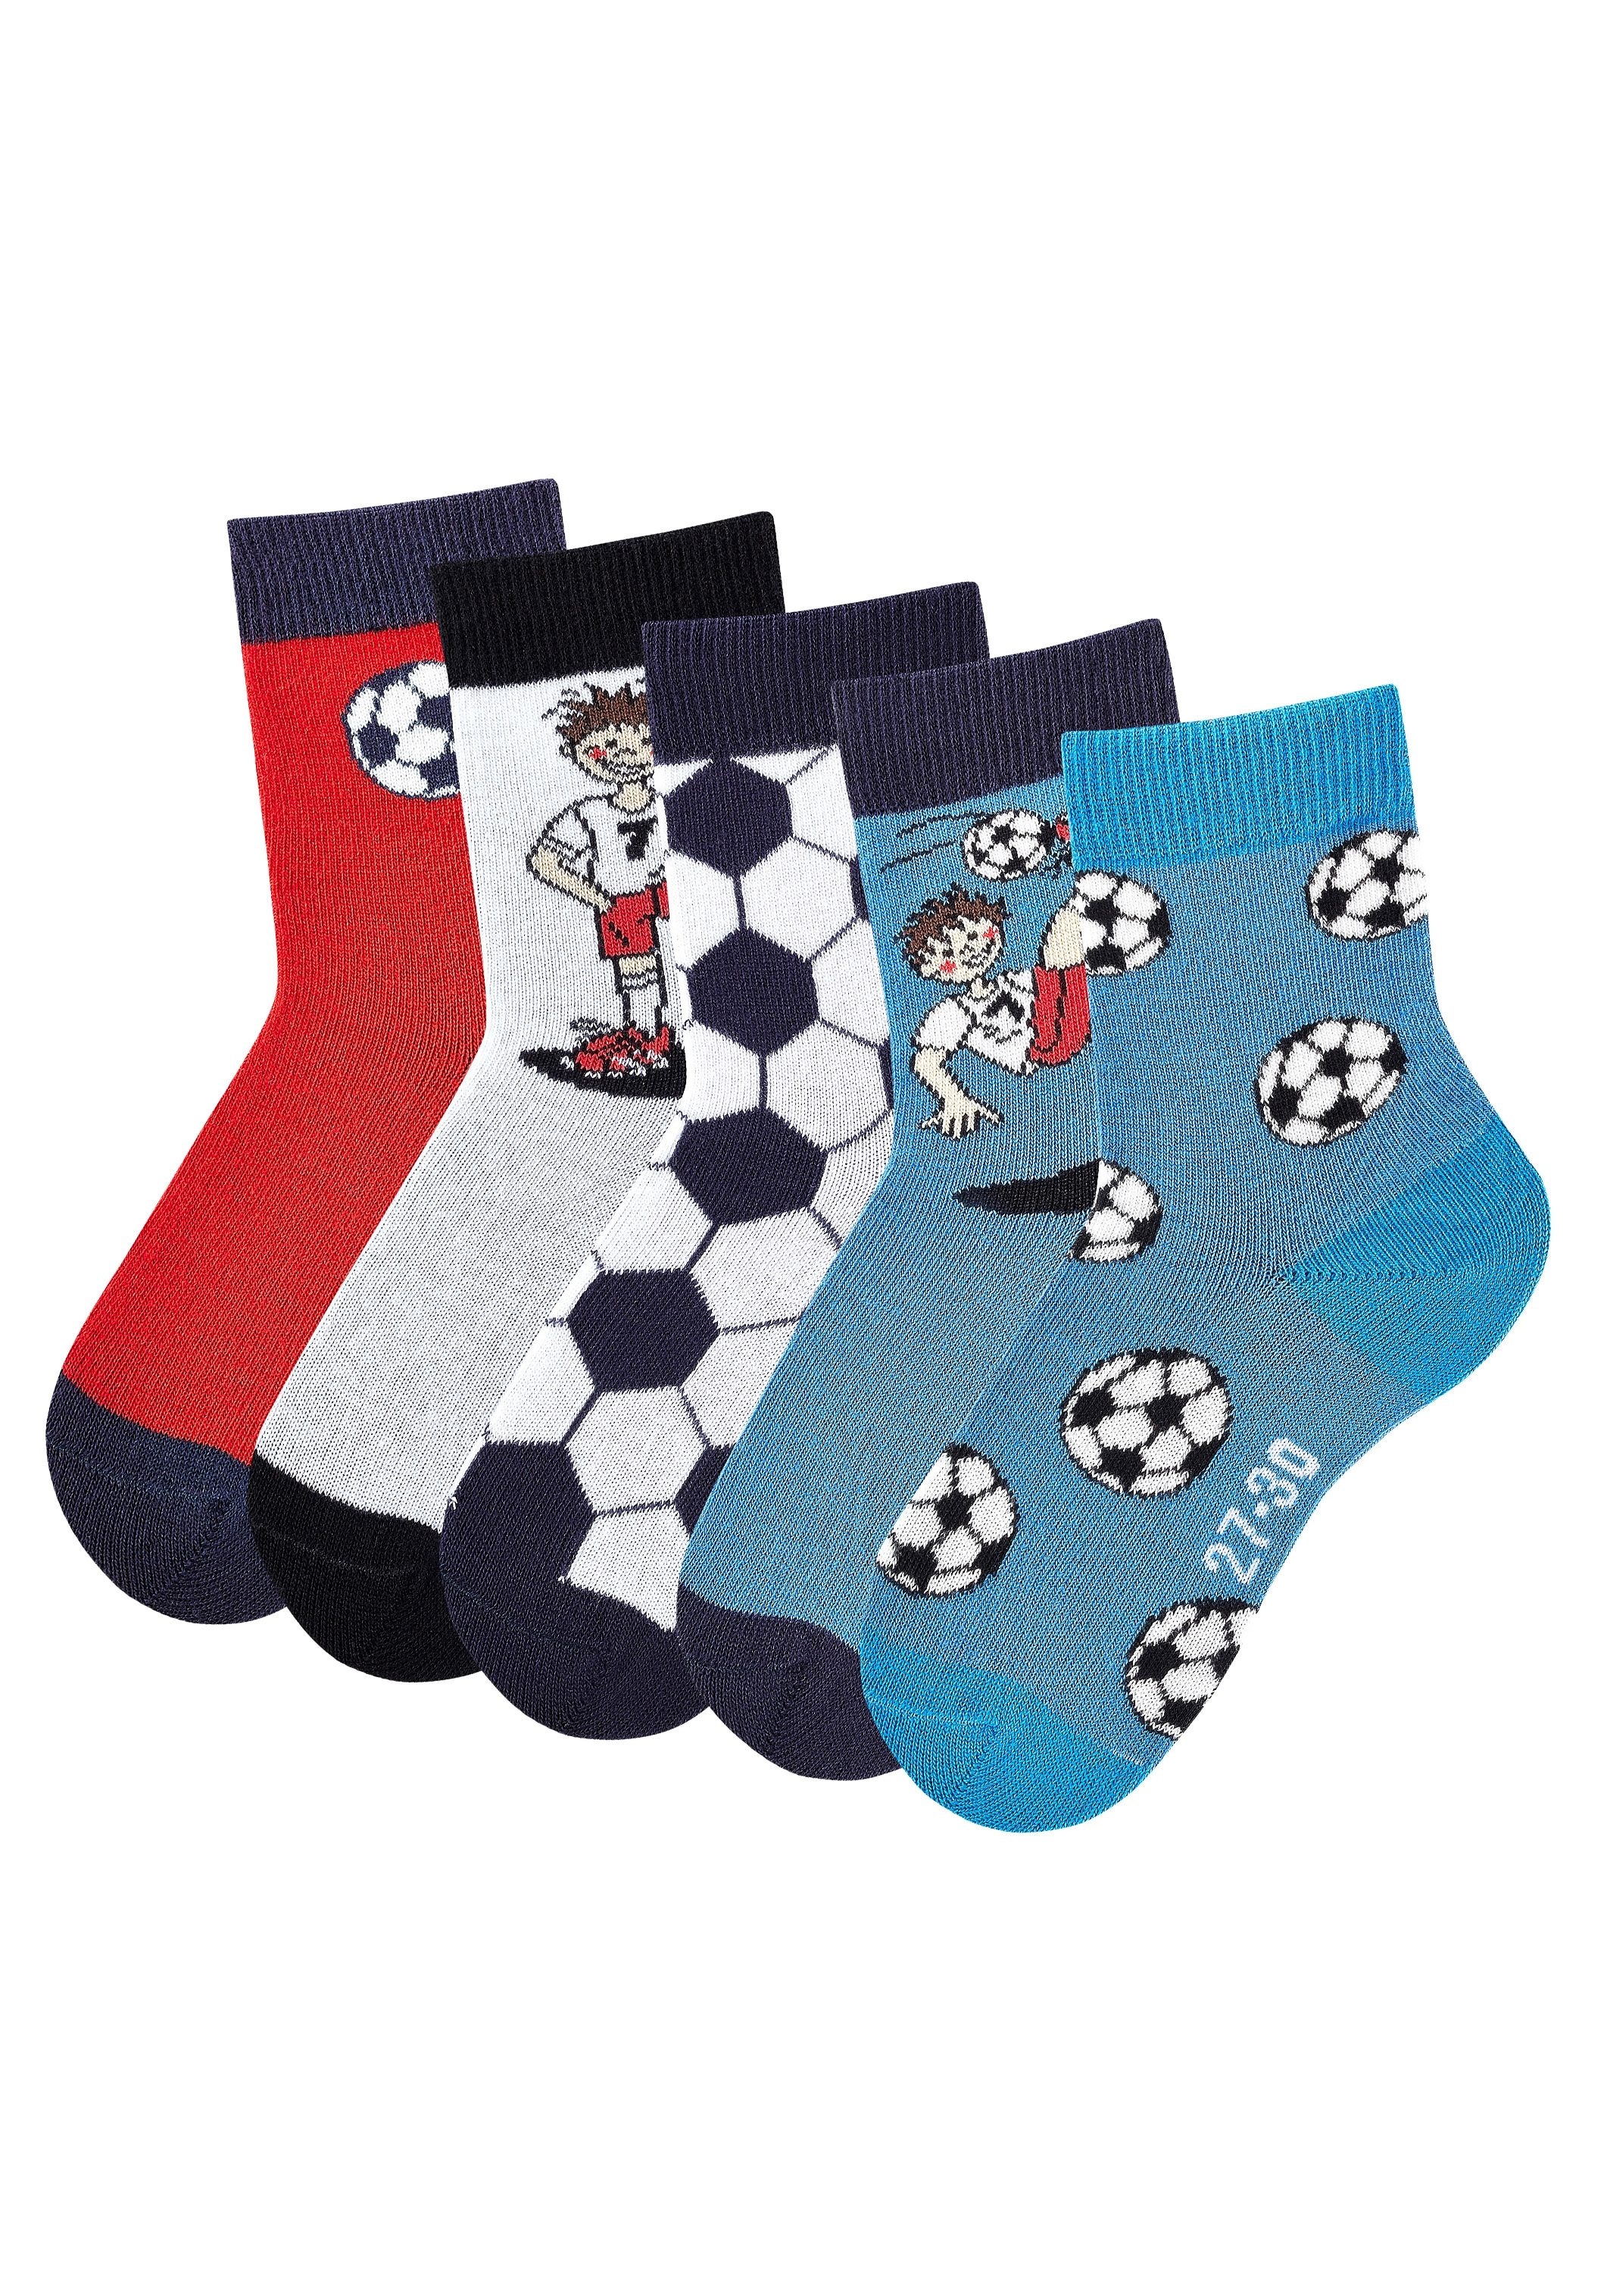 Fußballmotiven mit bei Paar), OTTO H.I.S Socken, (5